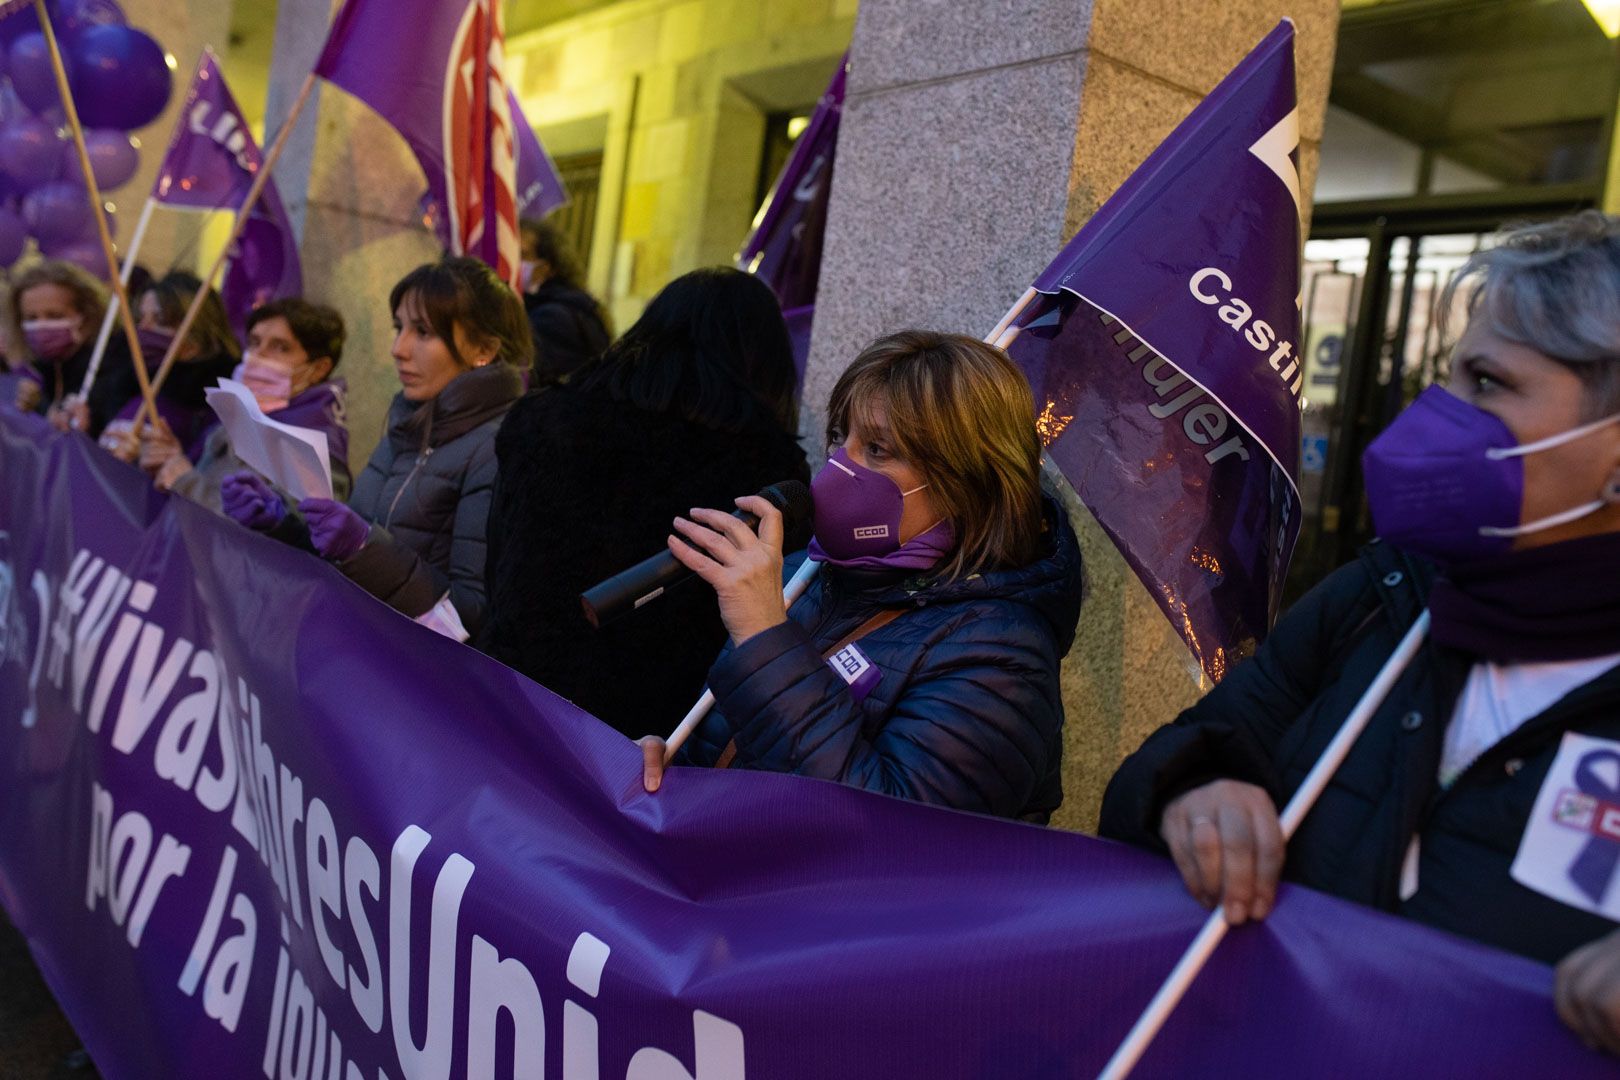 GALERÍA | La manifestación de los sindicatos del 8M en Zamora, en imágenes